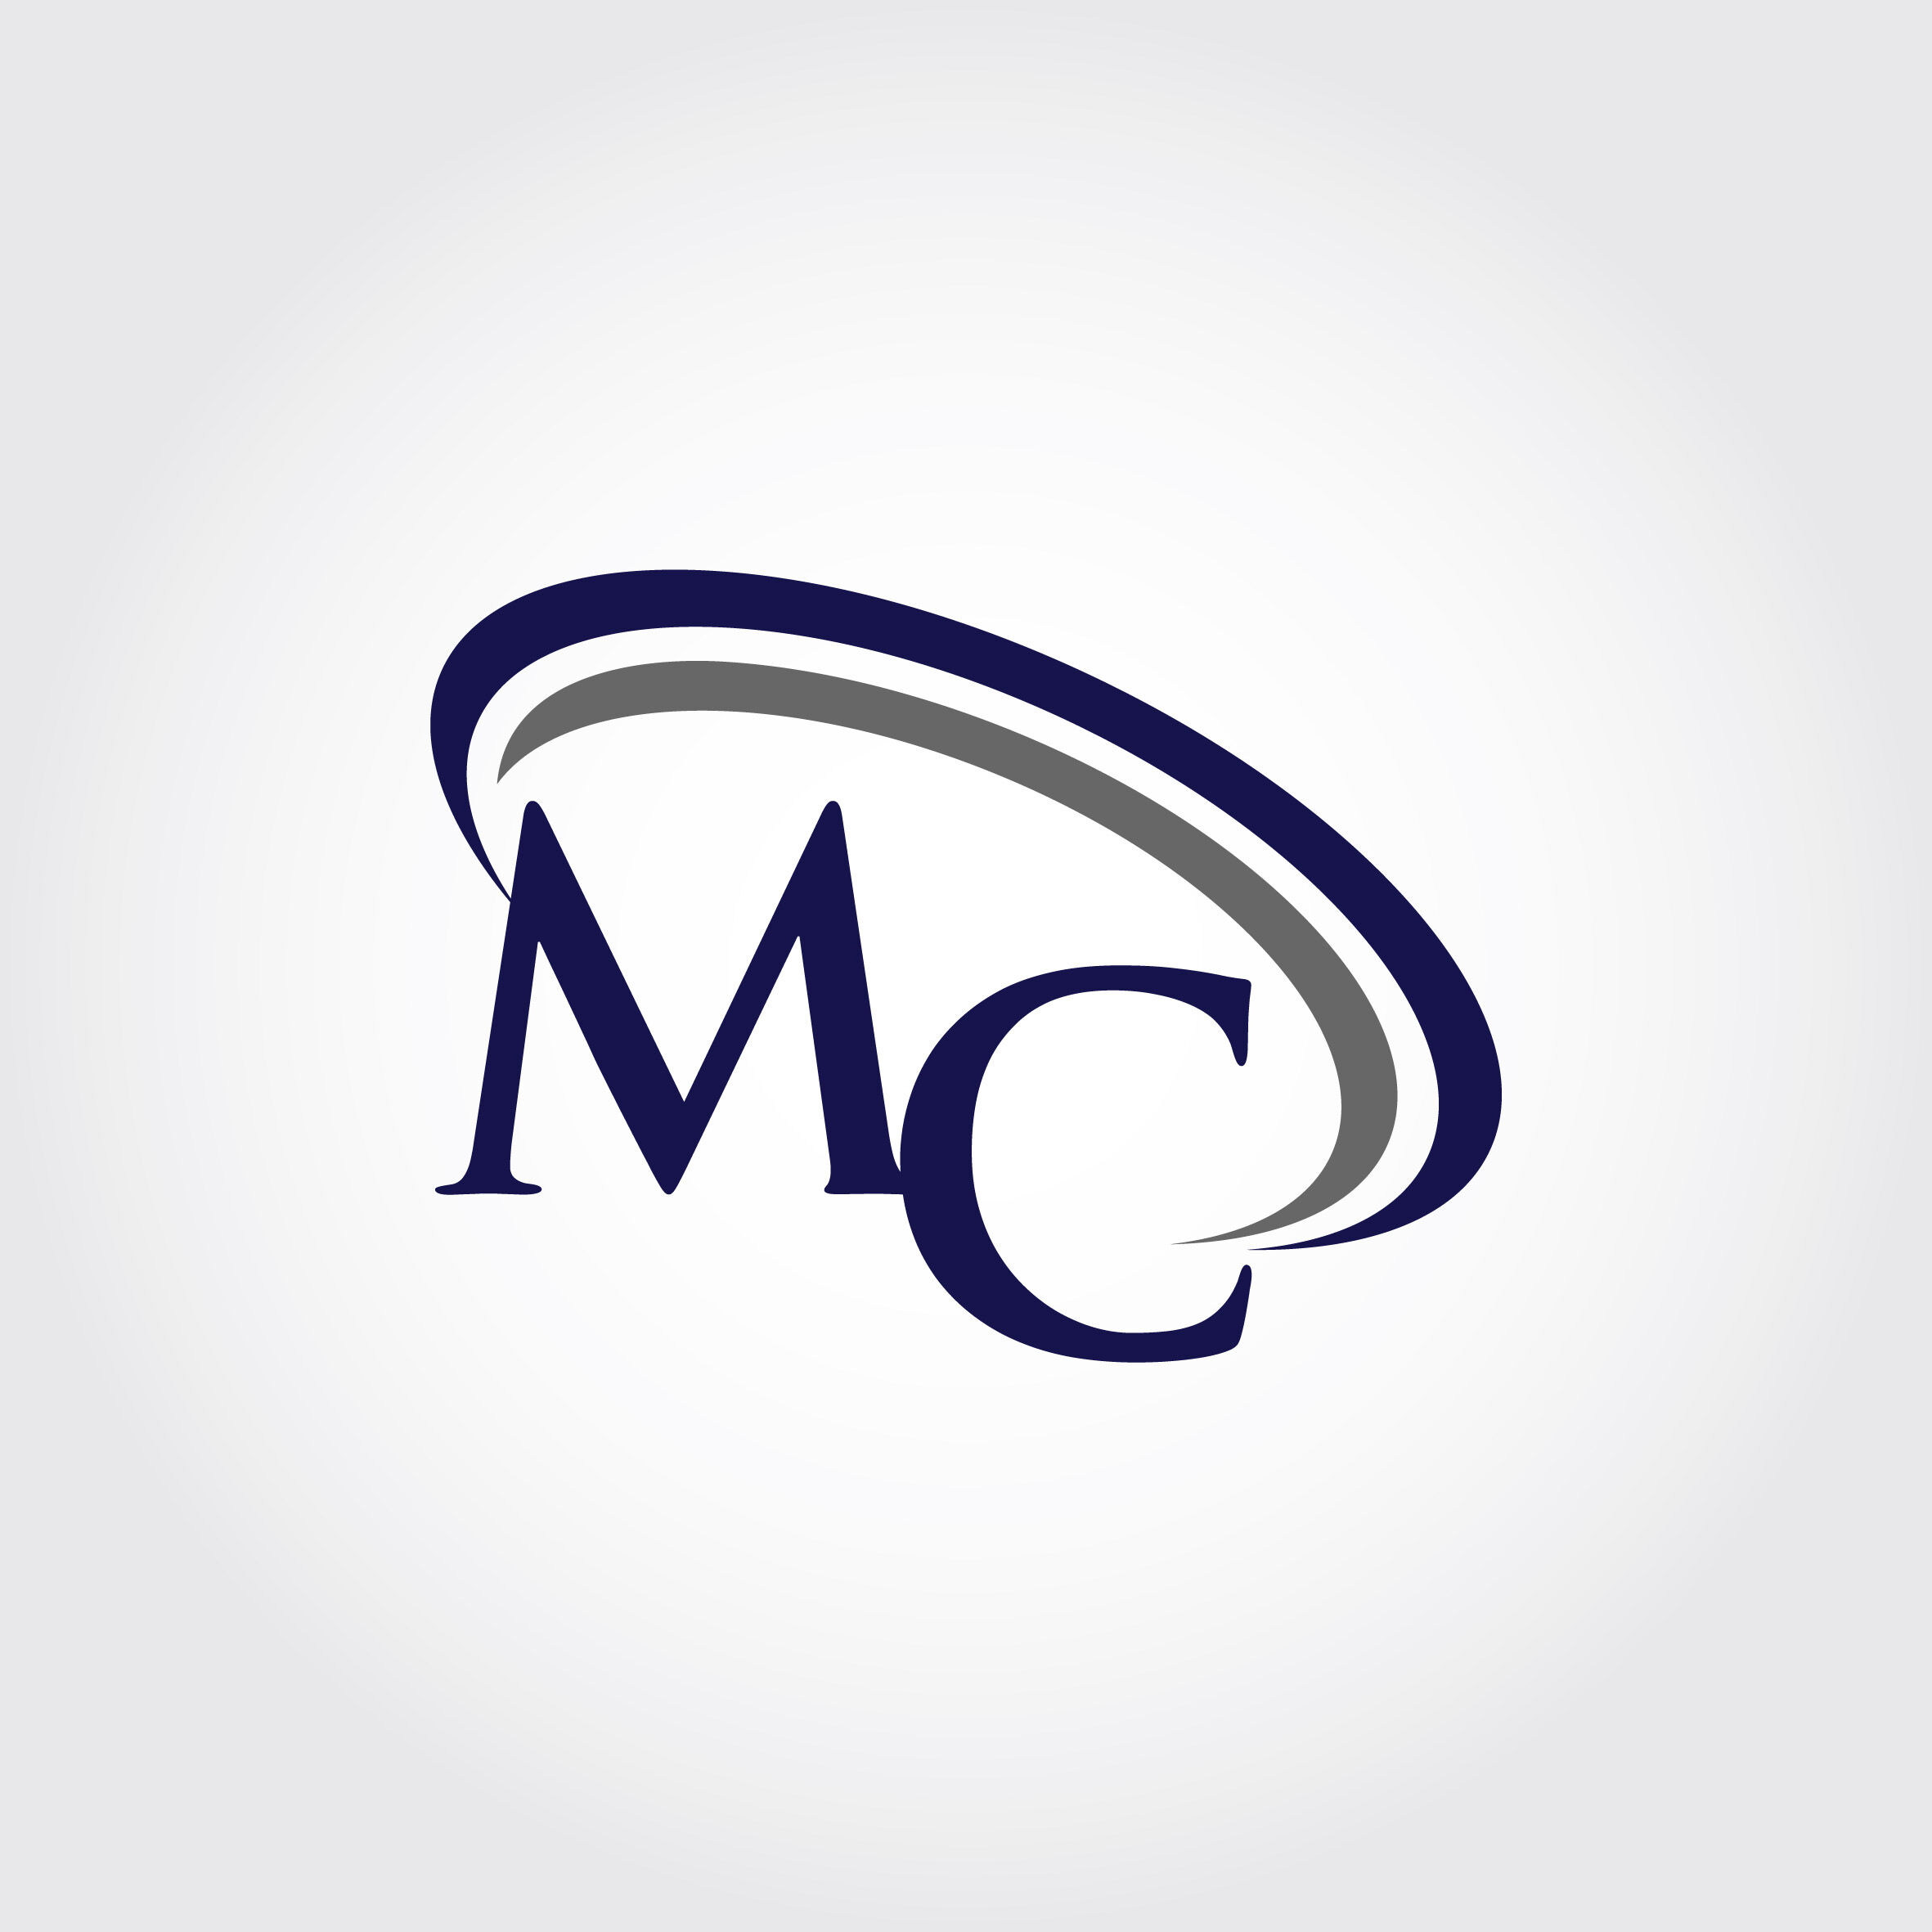 Thiết kế logo for mc đẹp và chuyên nghiệp tại Hà Nội